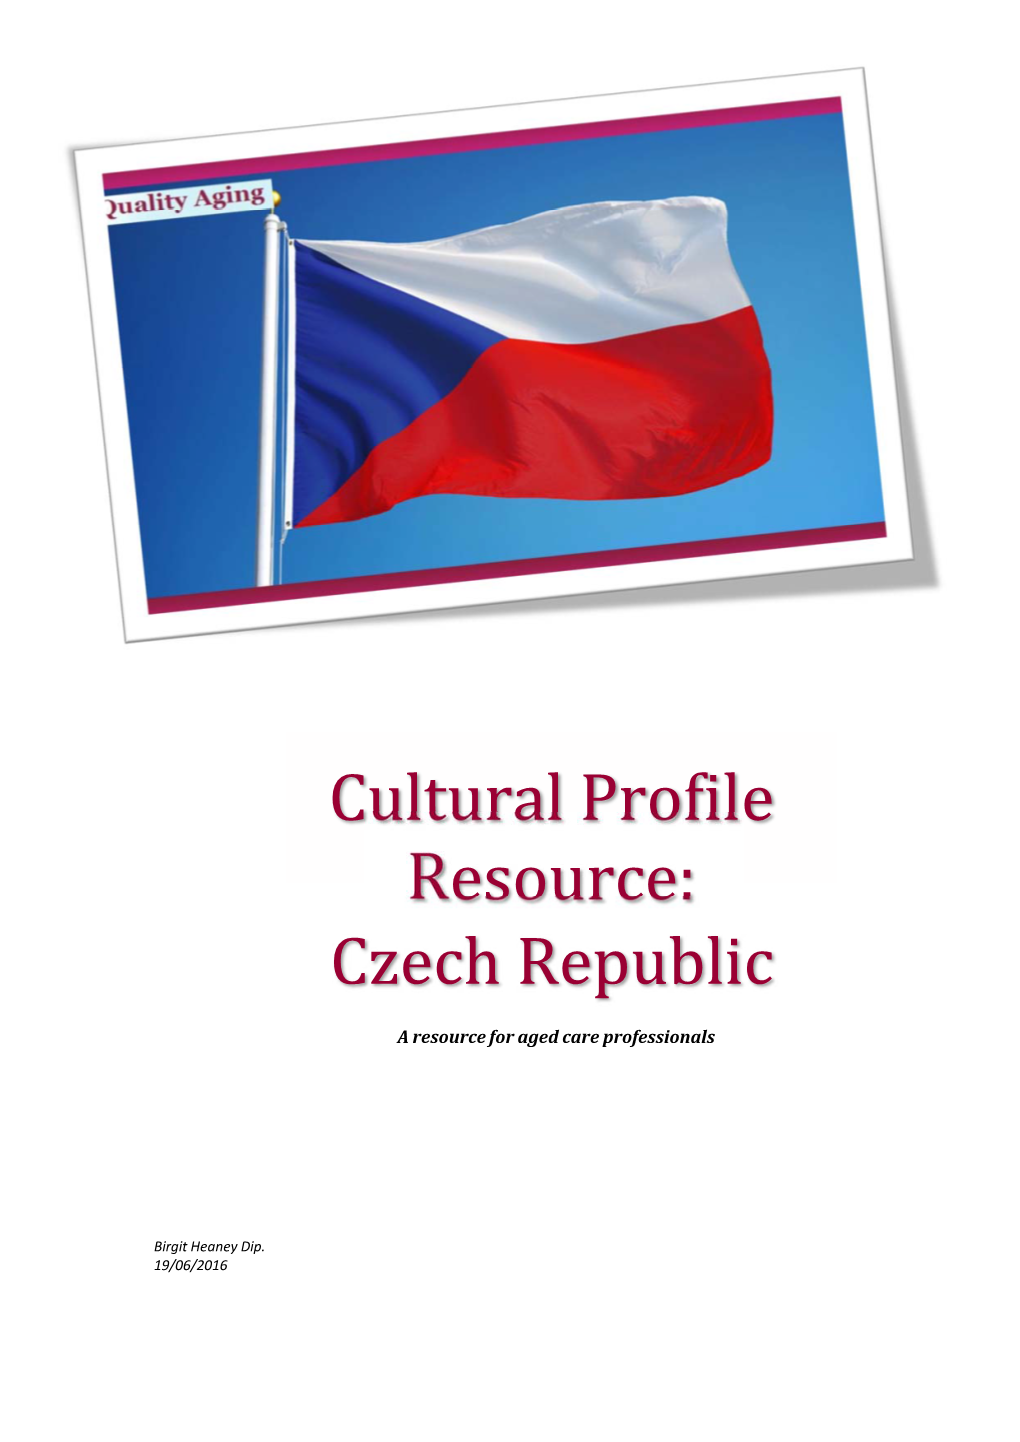 Cultural Profile Resource: Czech Republic